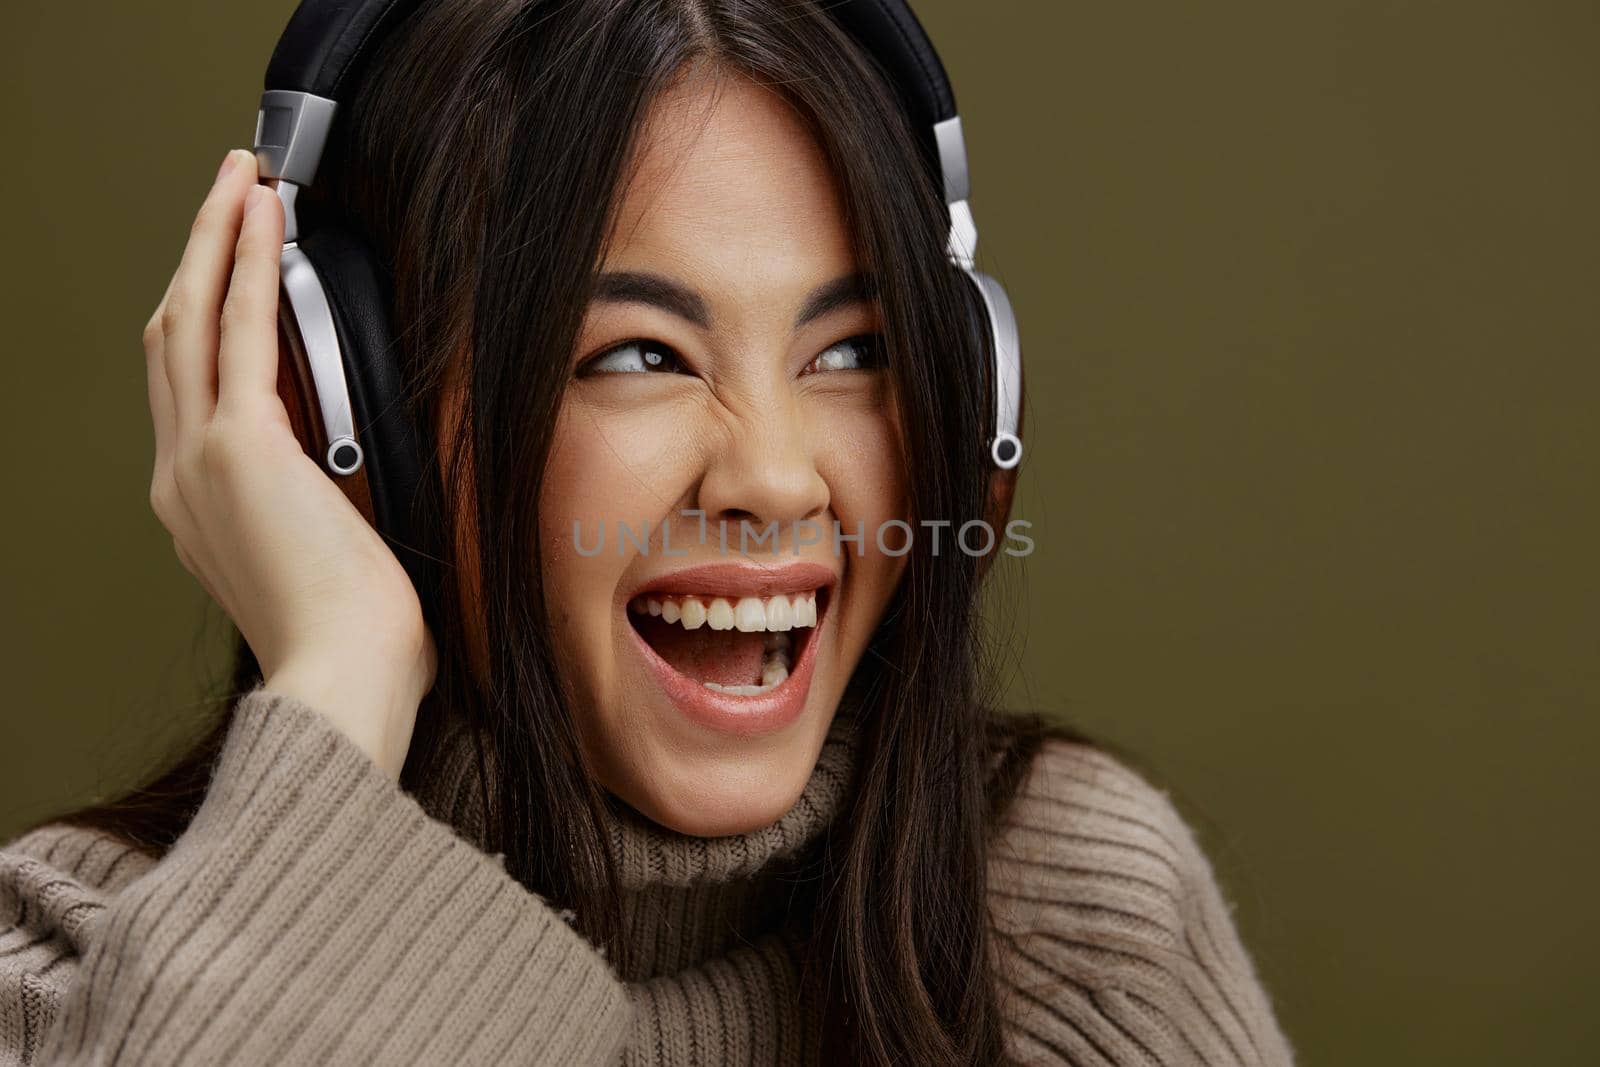 beautiful woman wireless headphones music fun technology Lifestyle by SHOTPRIME